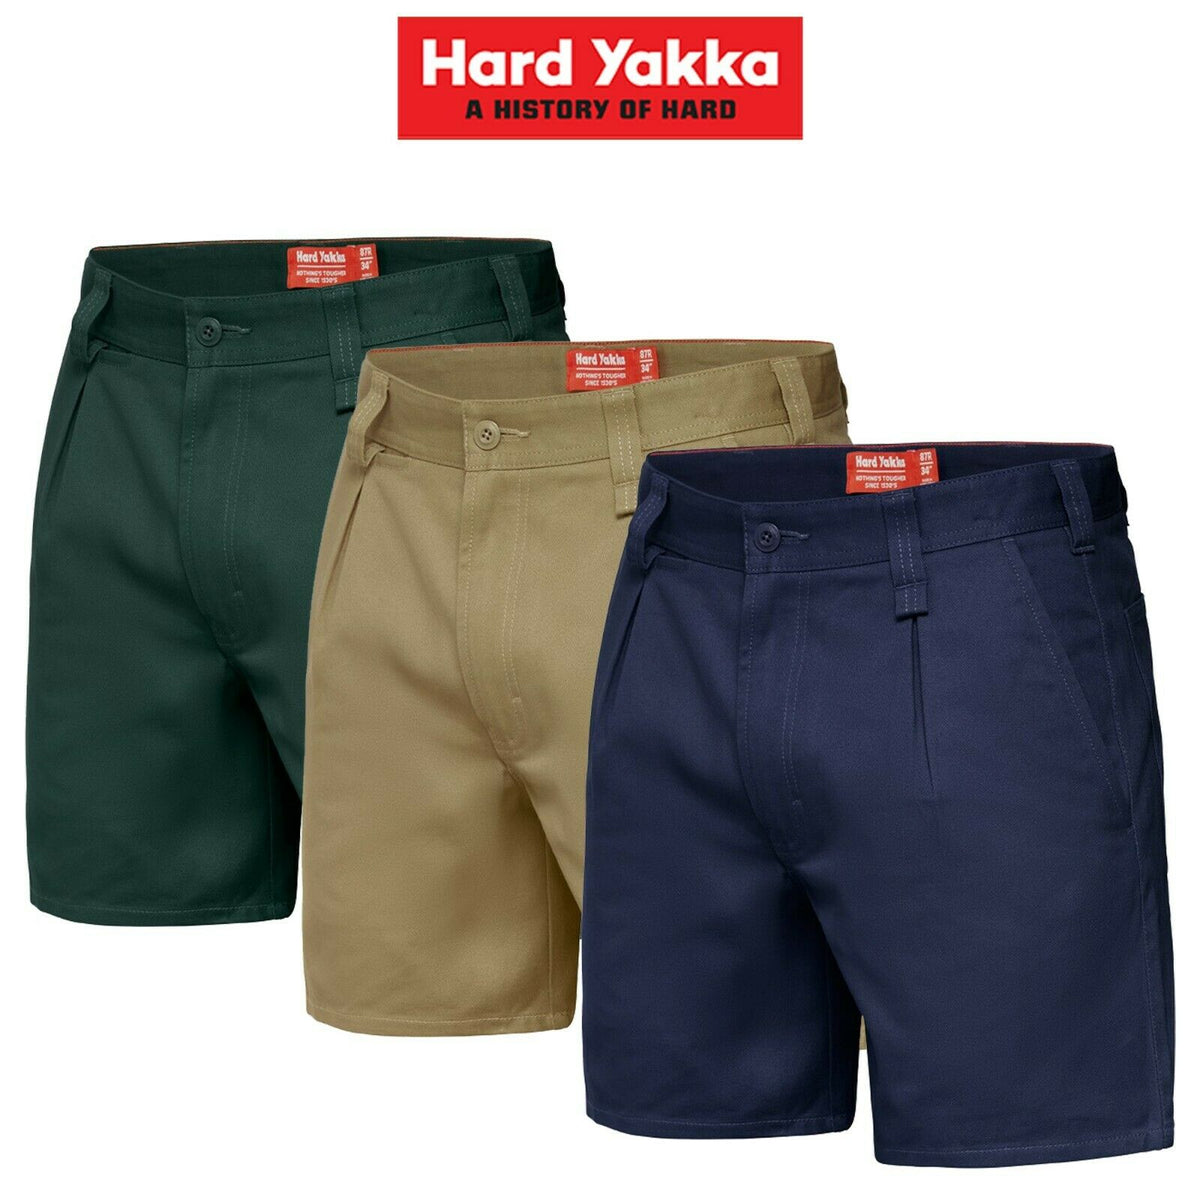 Hard Yakka Drill Short Belt Loop Shorts Cotton Work Tough Trade Y05350